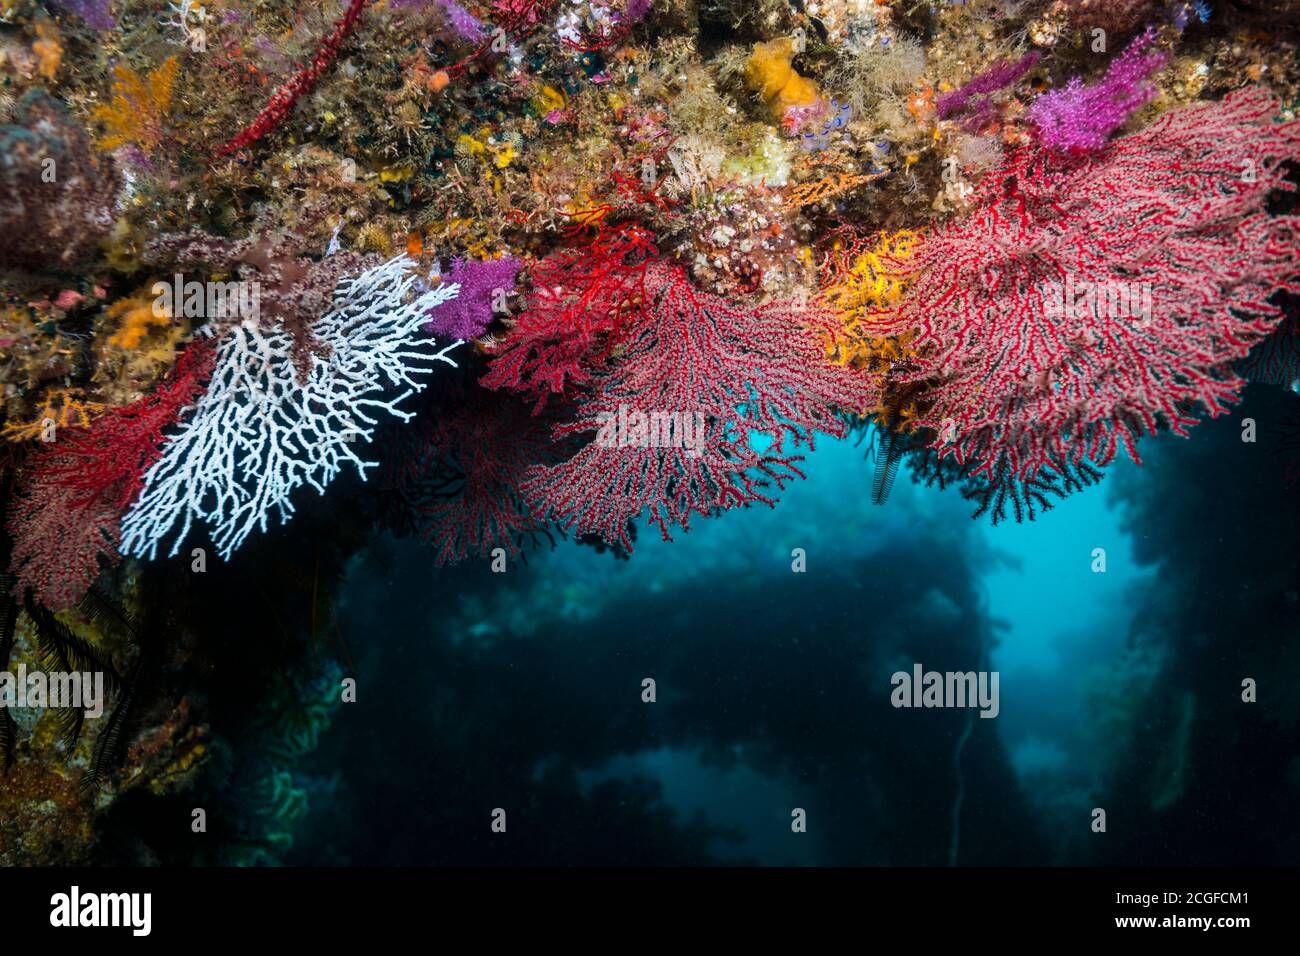 Corales fan, Melithaea flabellifera (Kükenthal, 1908), en arrecifes de peces artificiales Foto de stock